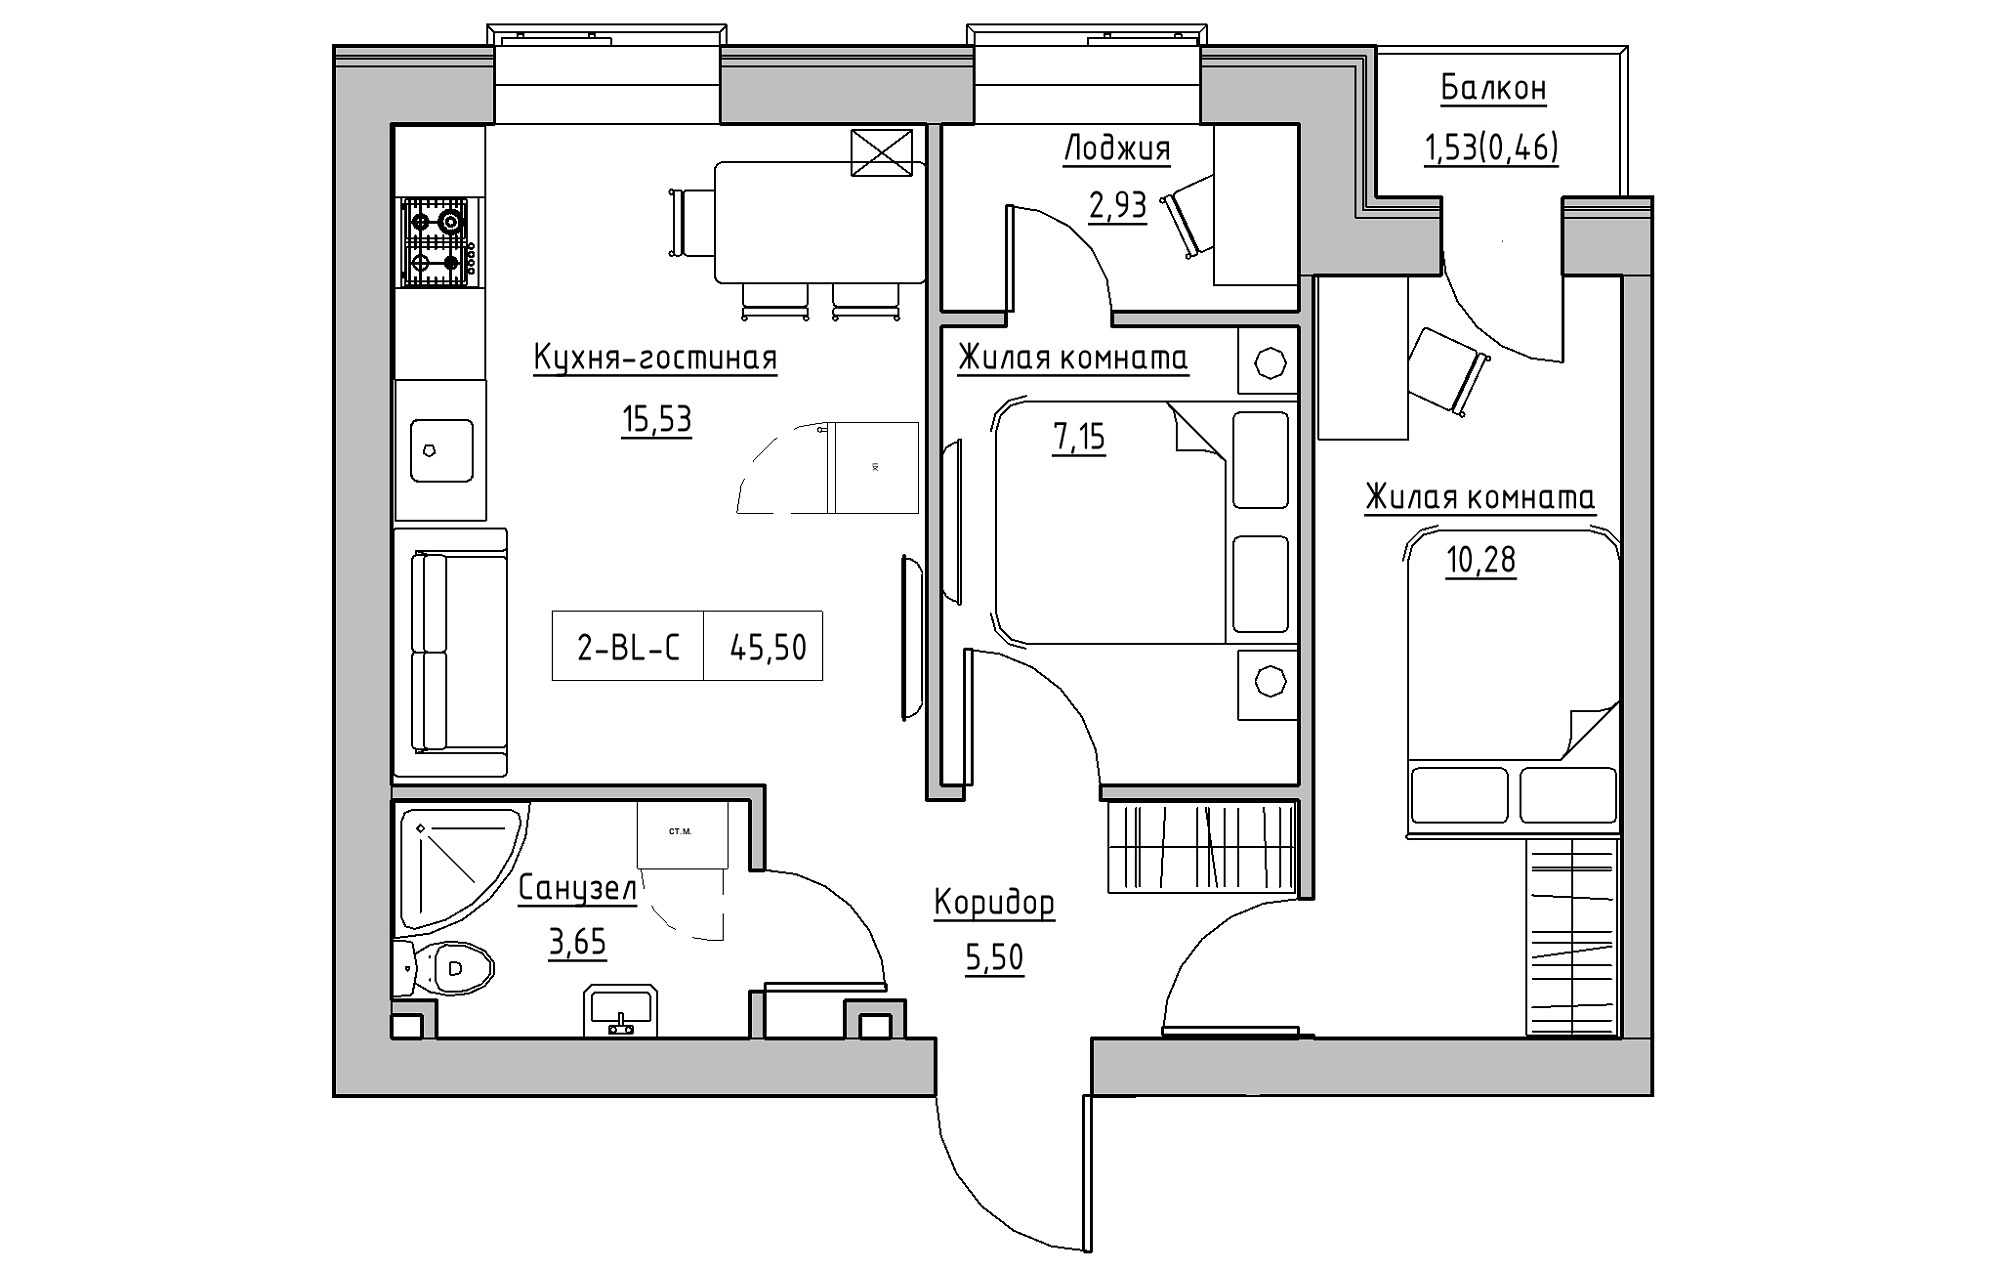 Планування 2-к квартира площею 45.5м2, KS-018-02/0008.